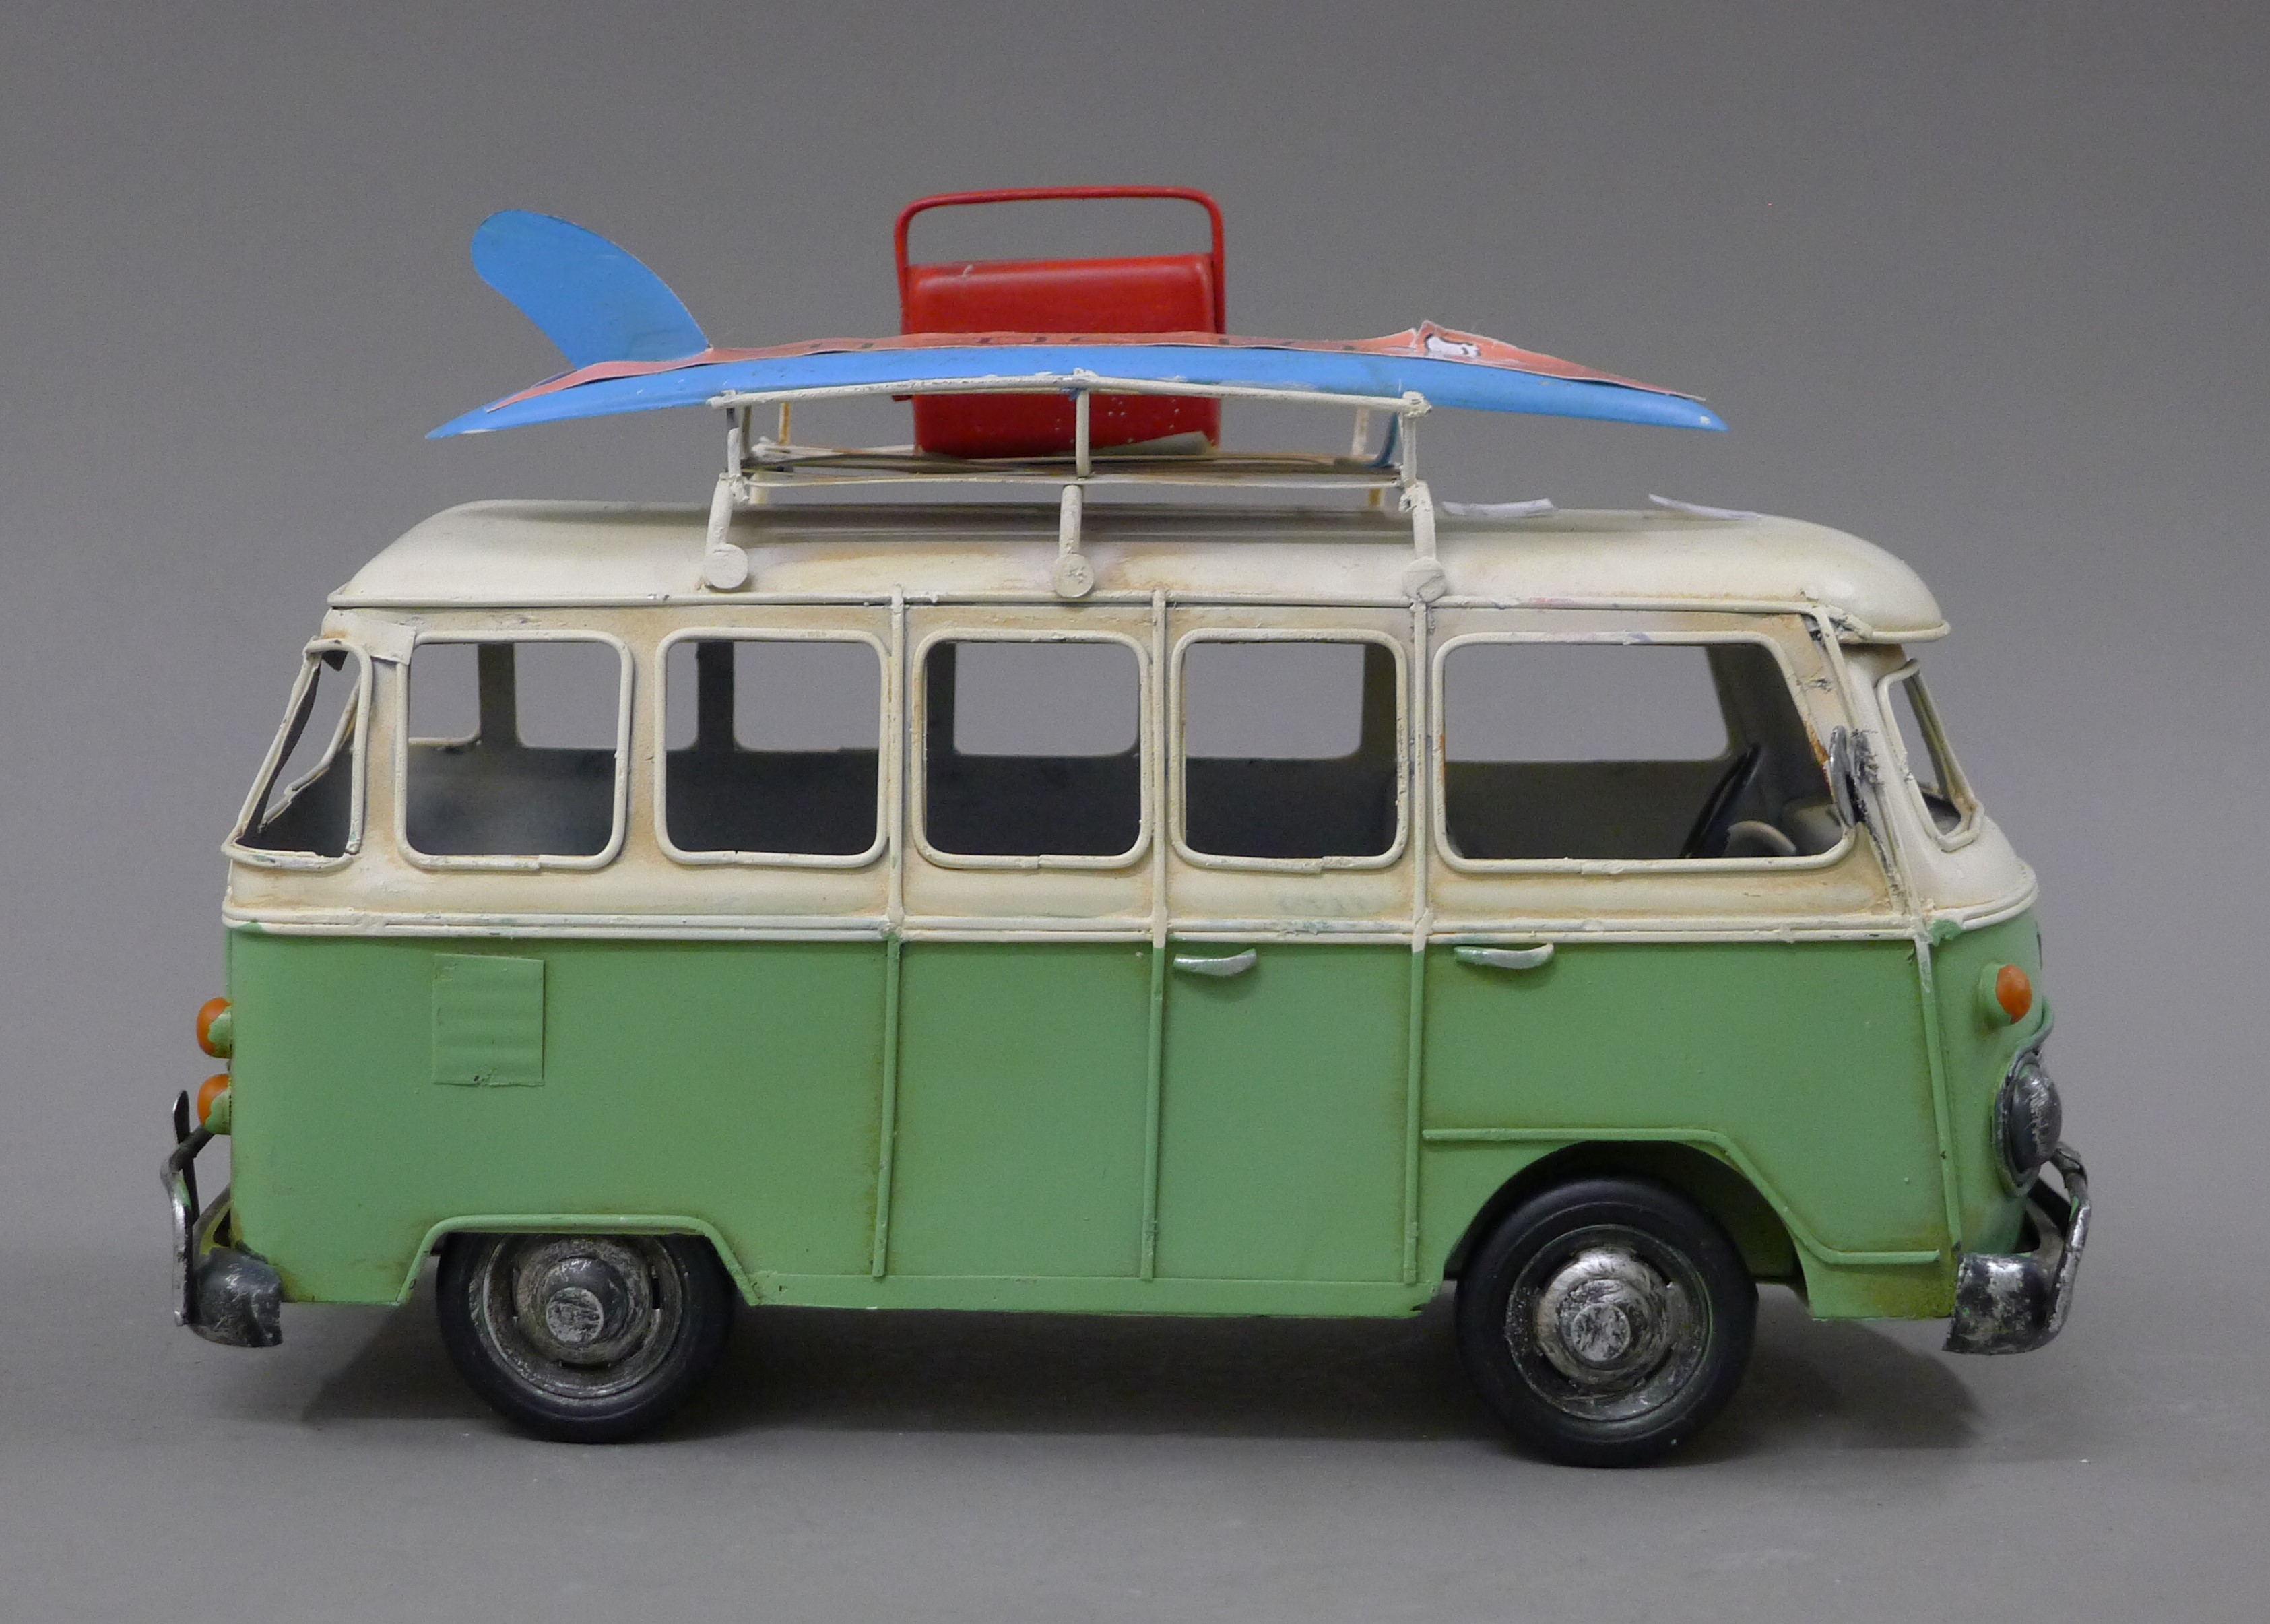 A model of a camper van. 26 cm long. - Image 2 of 3